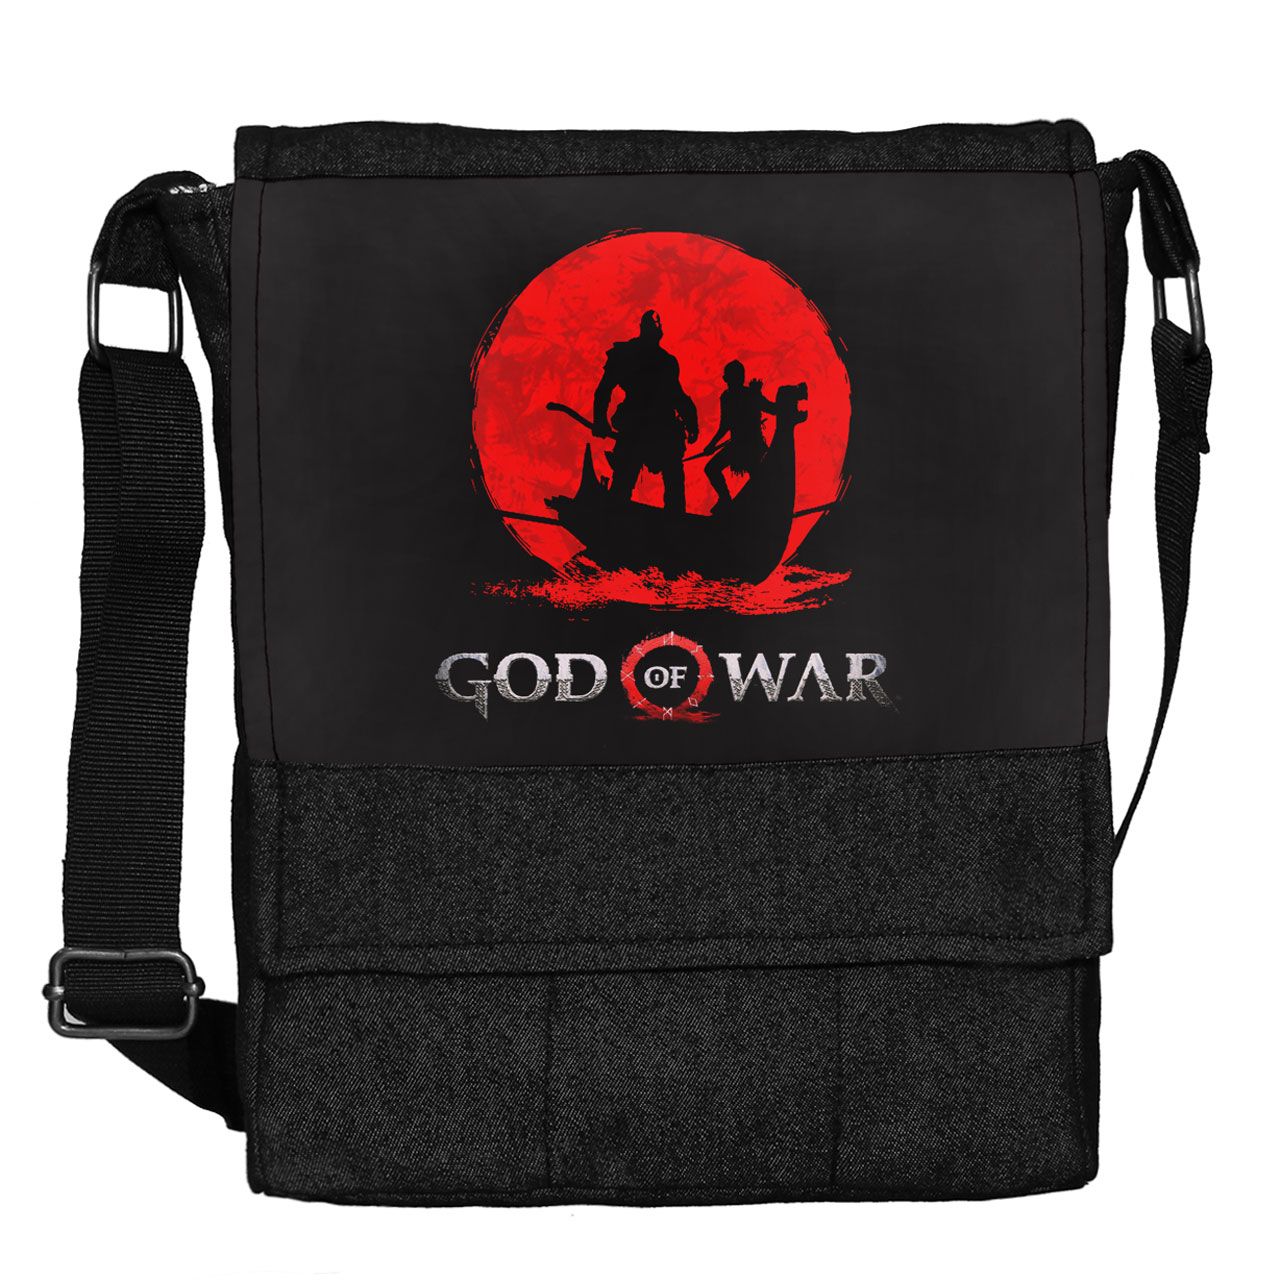 کیف دوشی چی چاپ طرح God Of War کد 65676 -  - 1